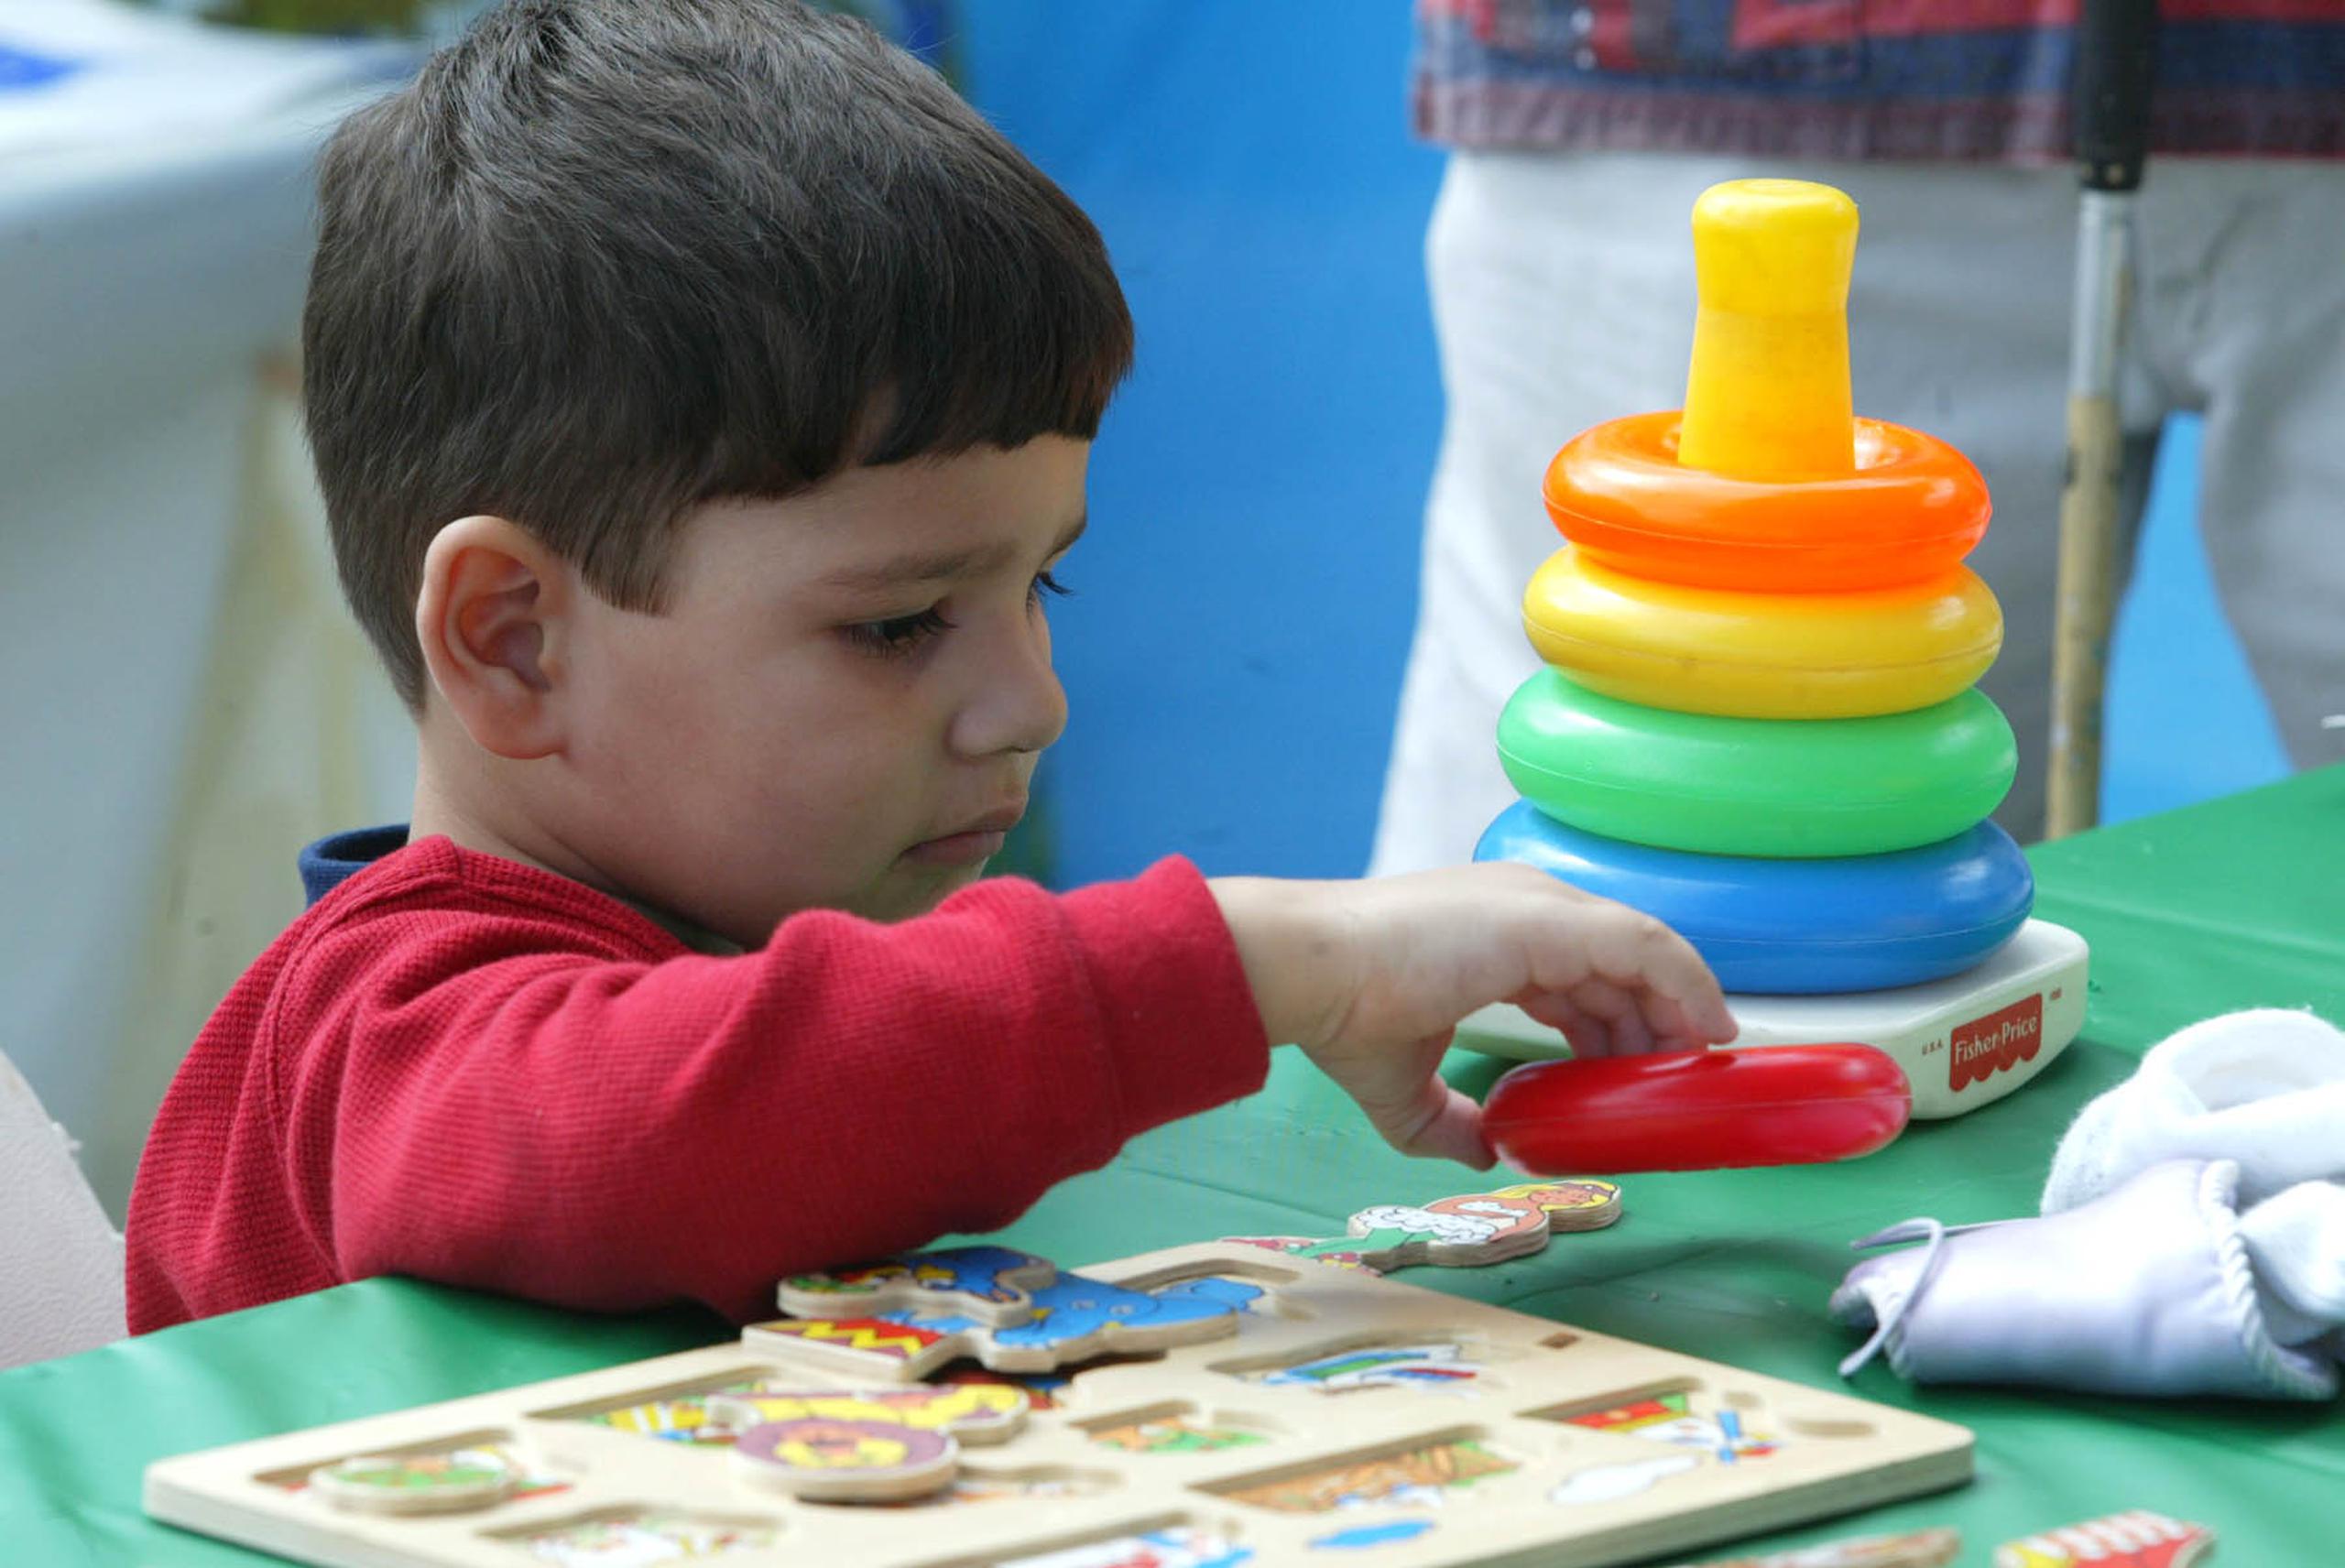 Los juguetes para construir o de tipo rompecabezas estimulan el desarrollo cognitivo y el área de motor fino.